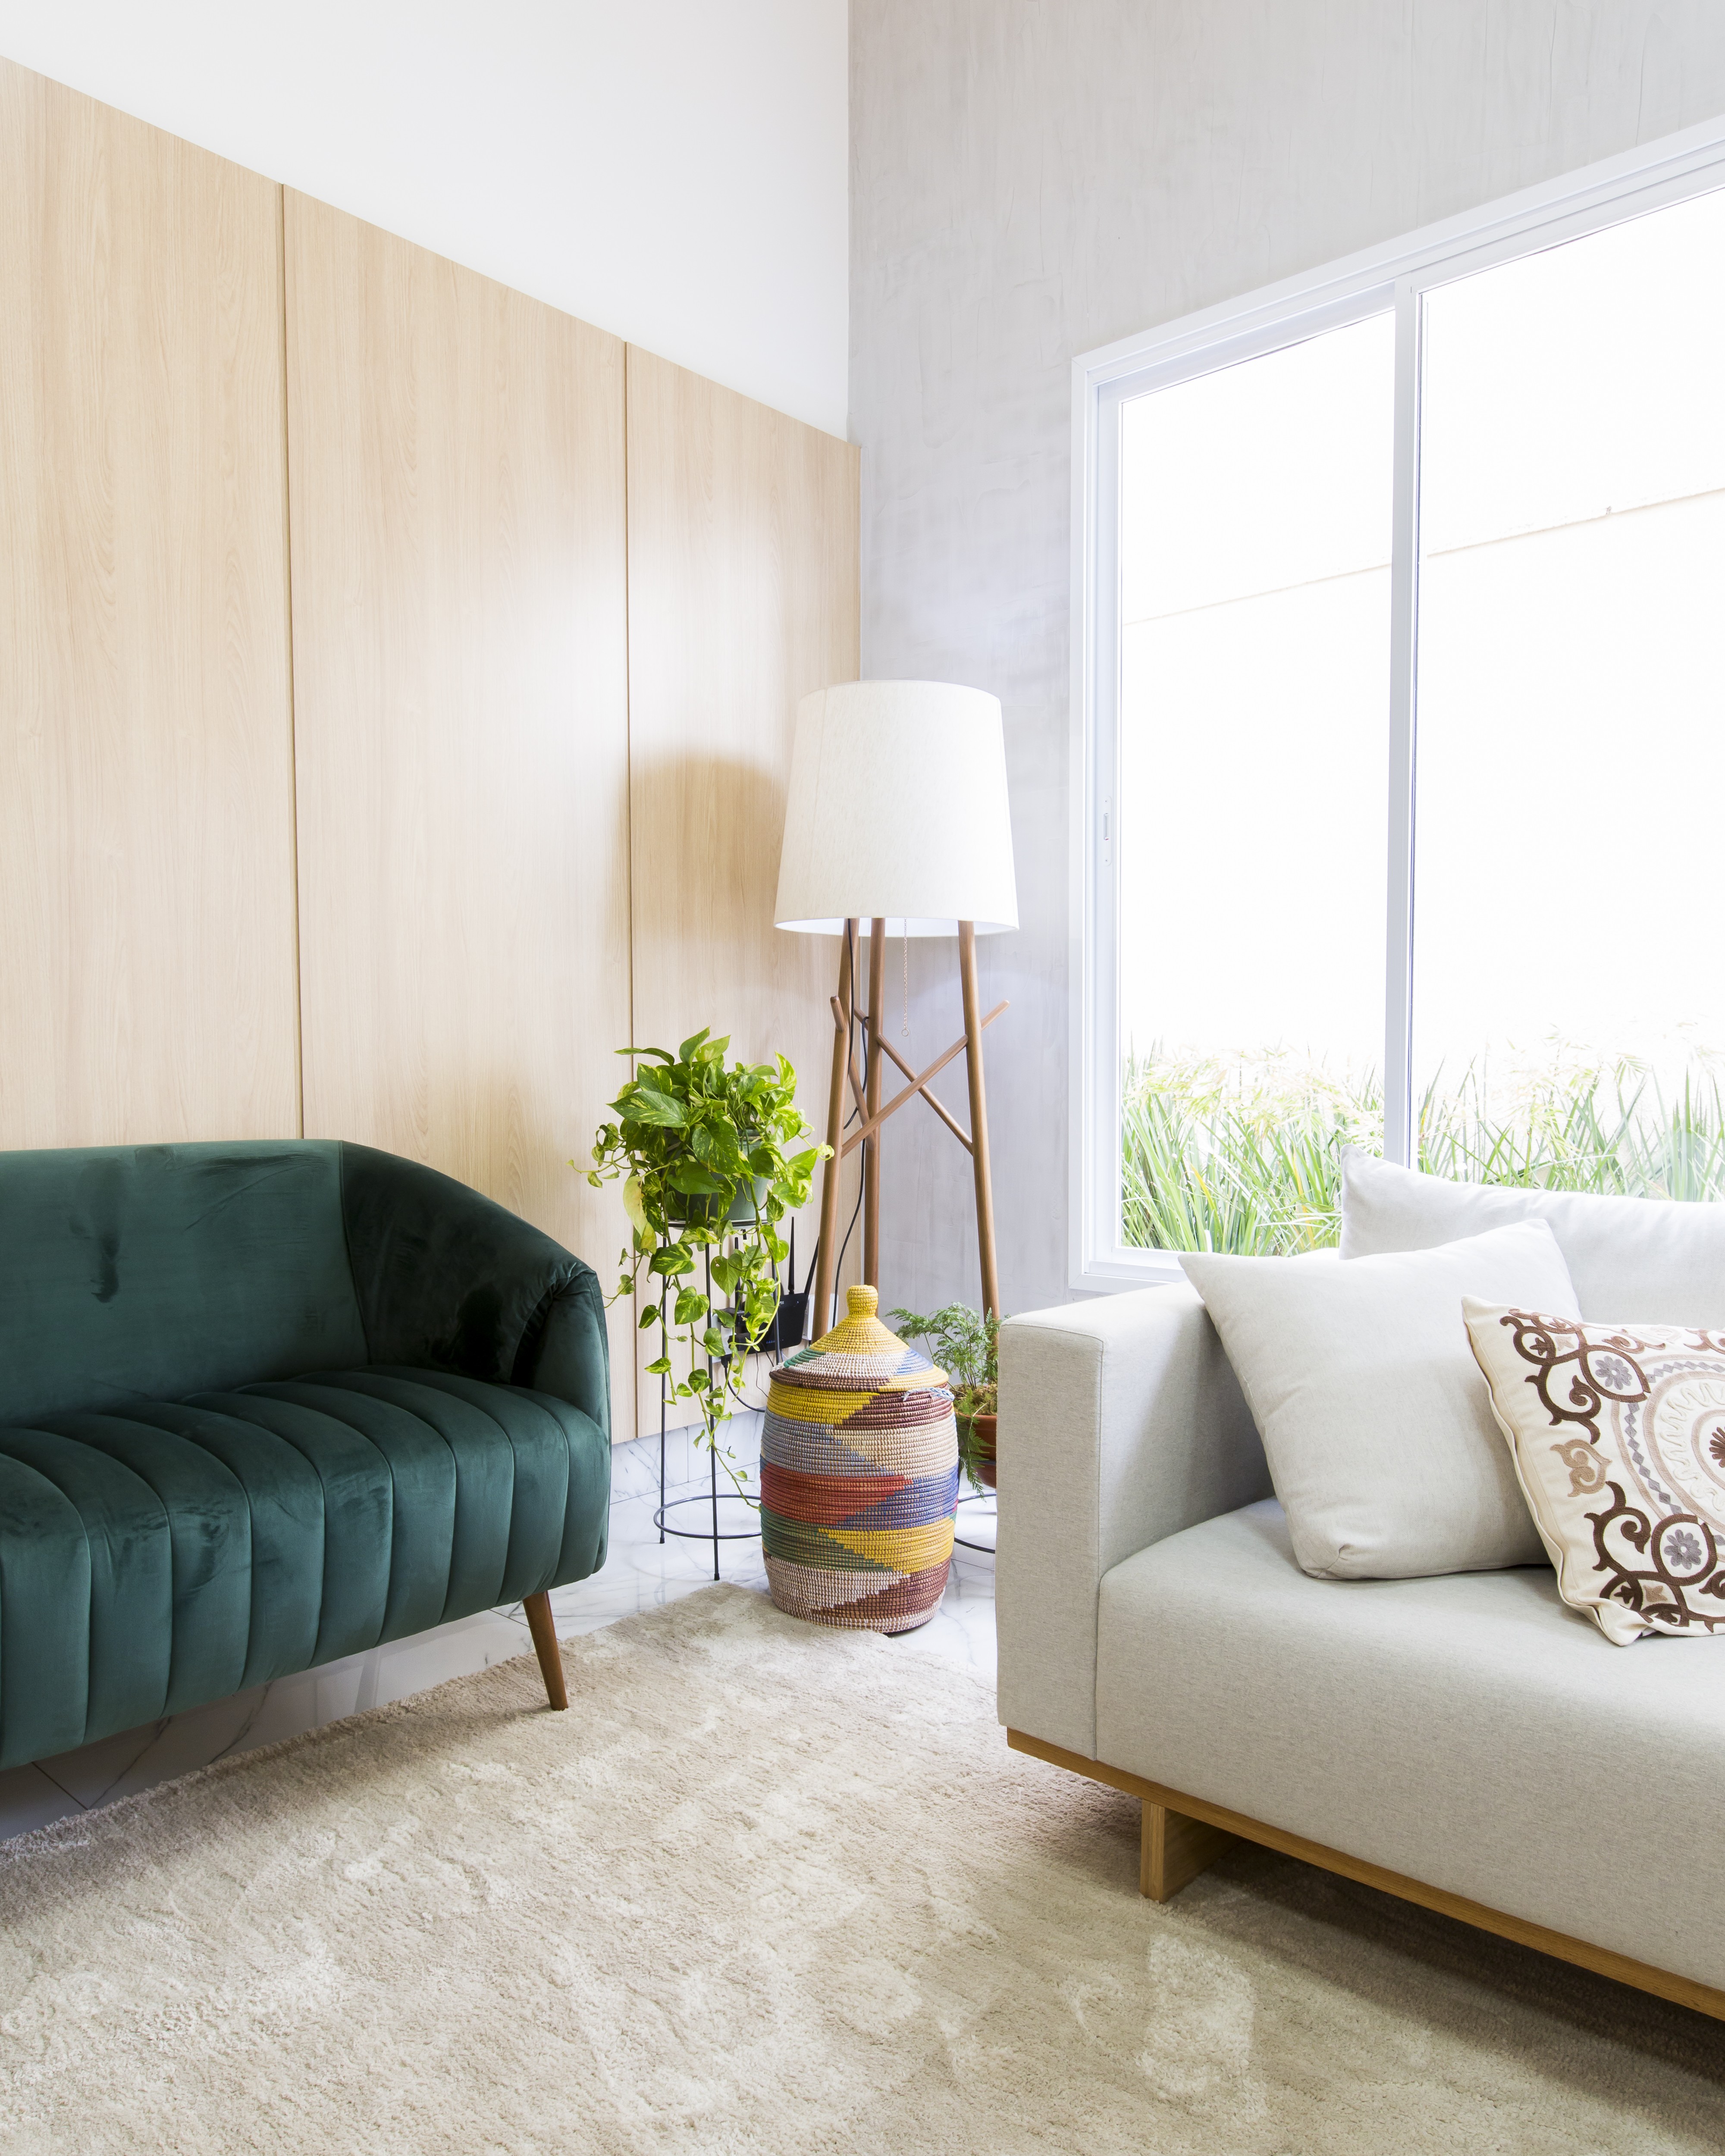 Décor do dia: sala de estar com estilo minimalista e sofá verde (Foto: Isabela Dutra)